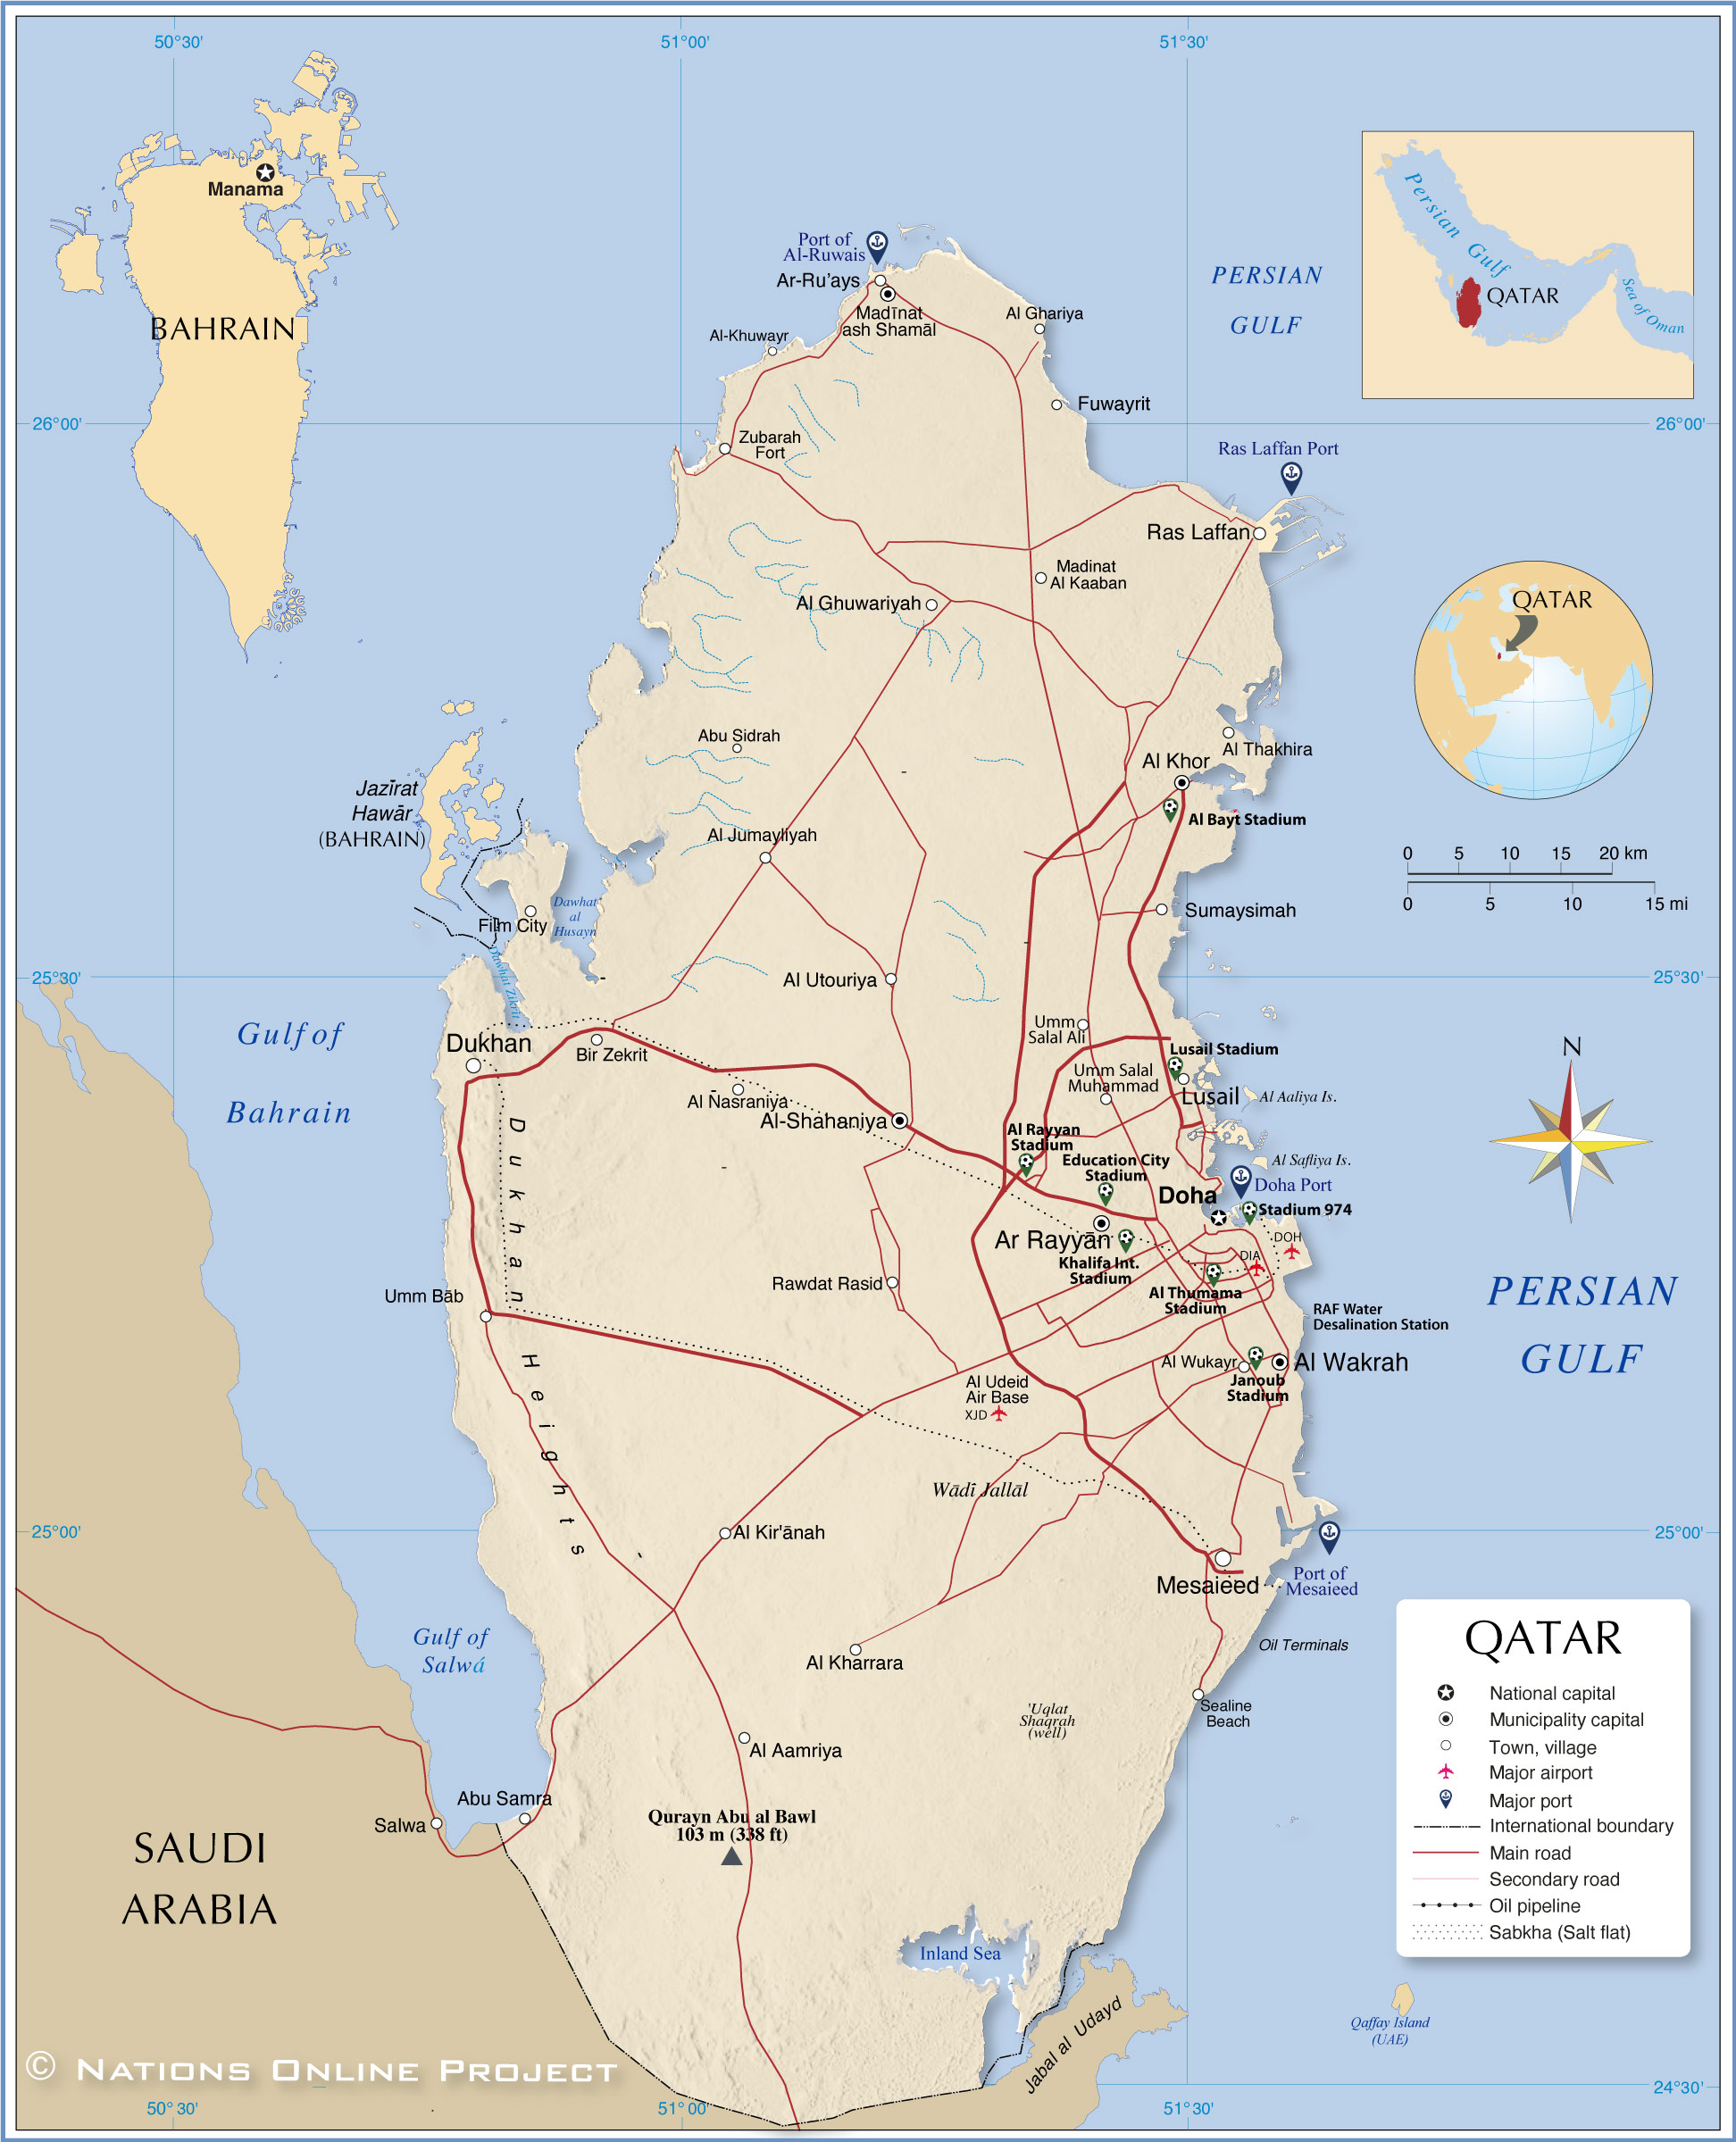 Political Map of Qatar